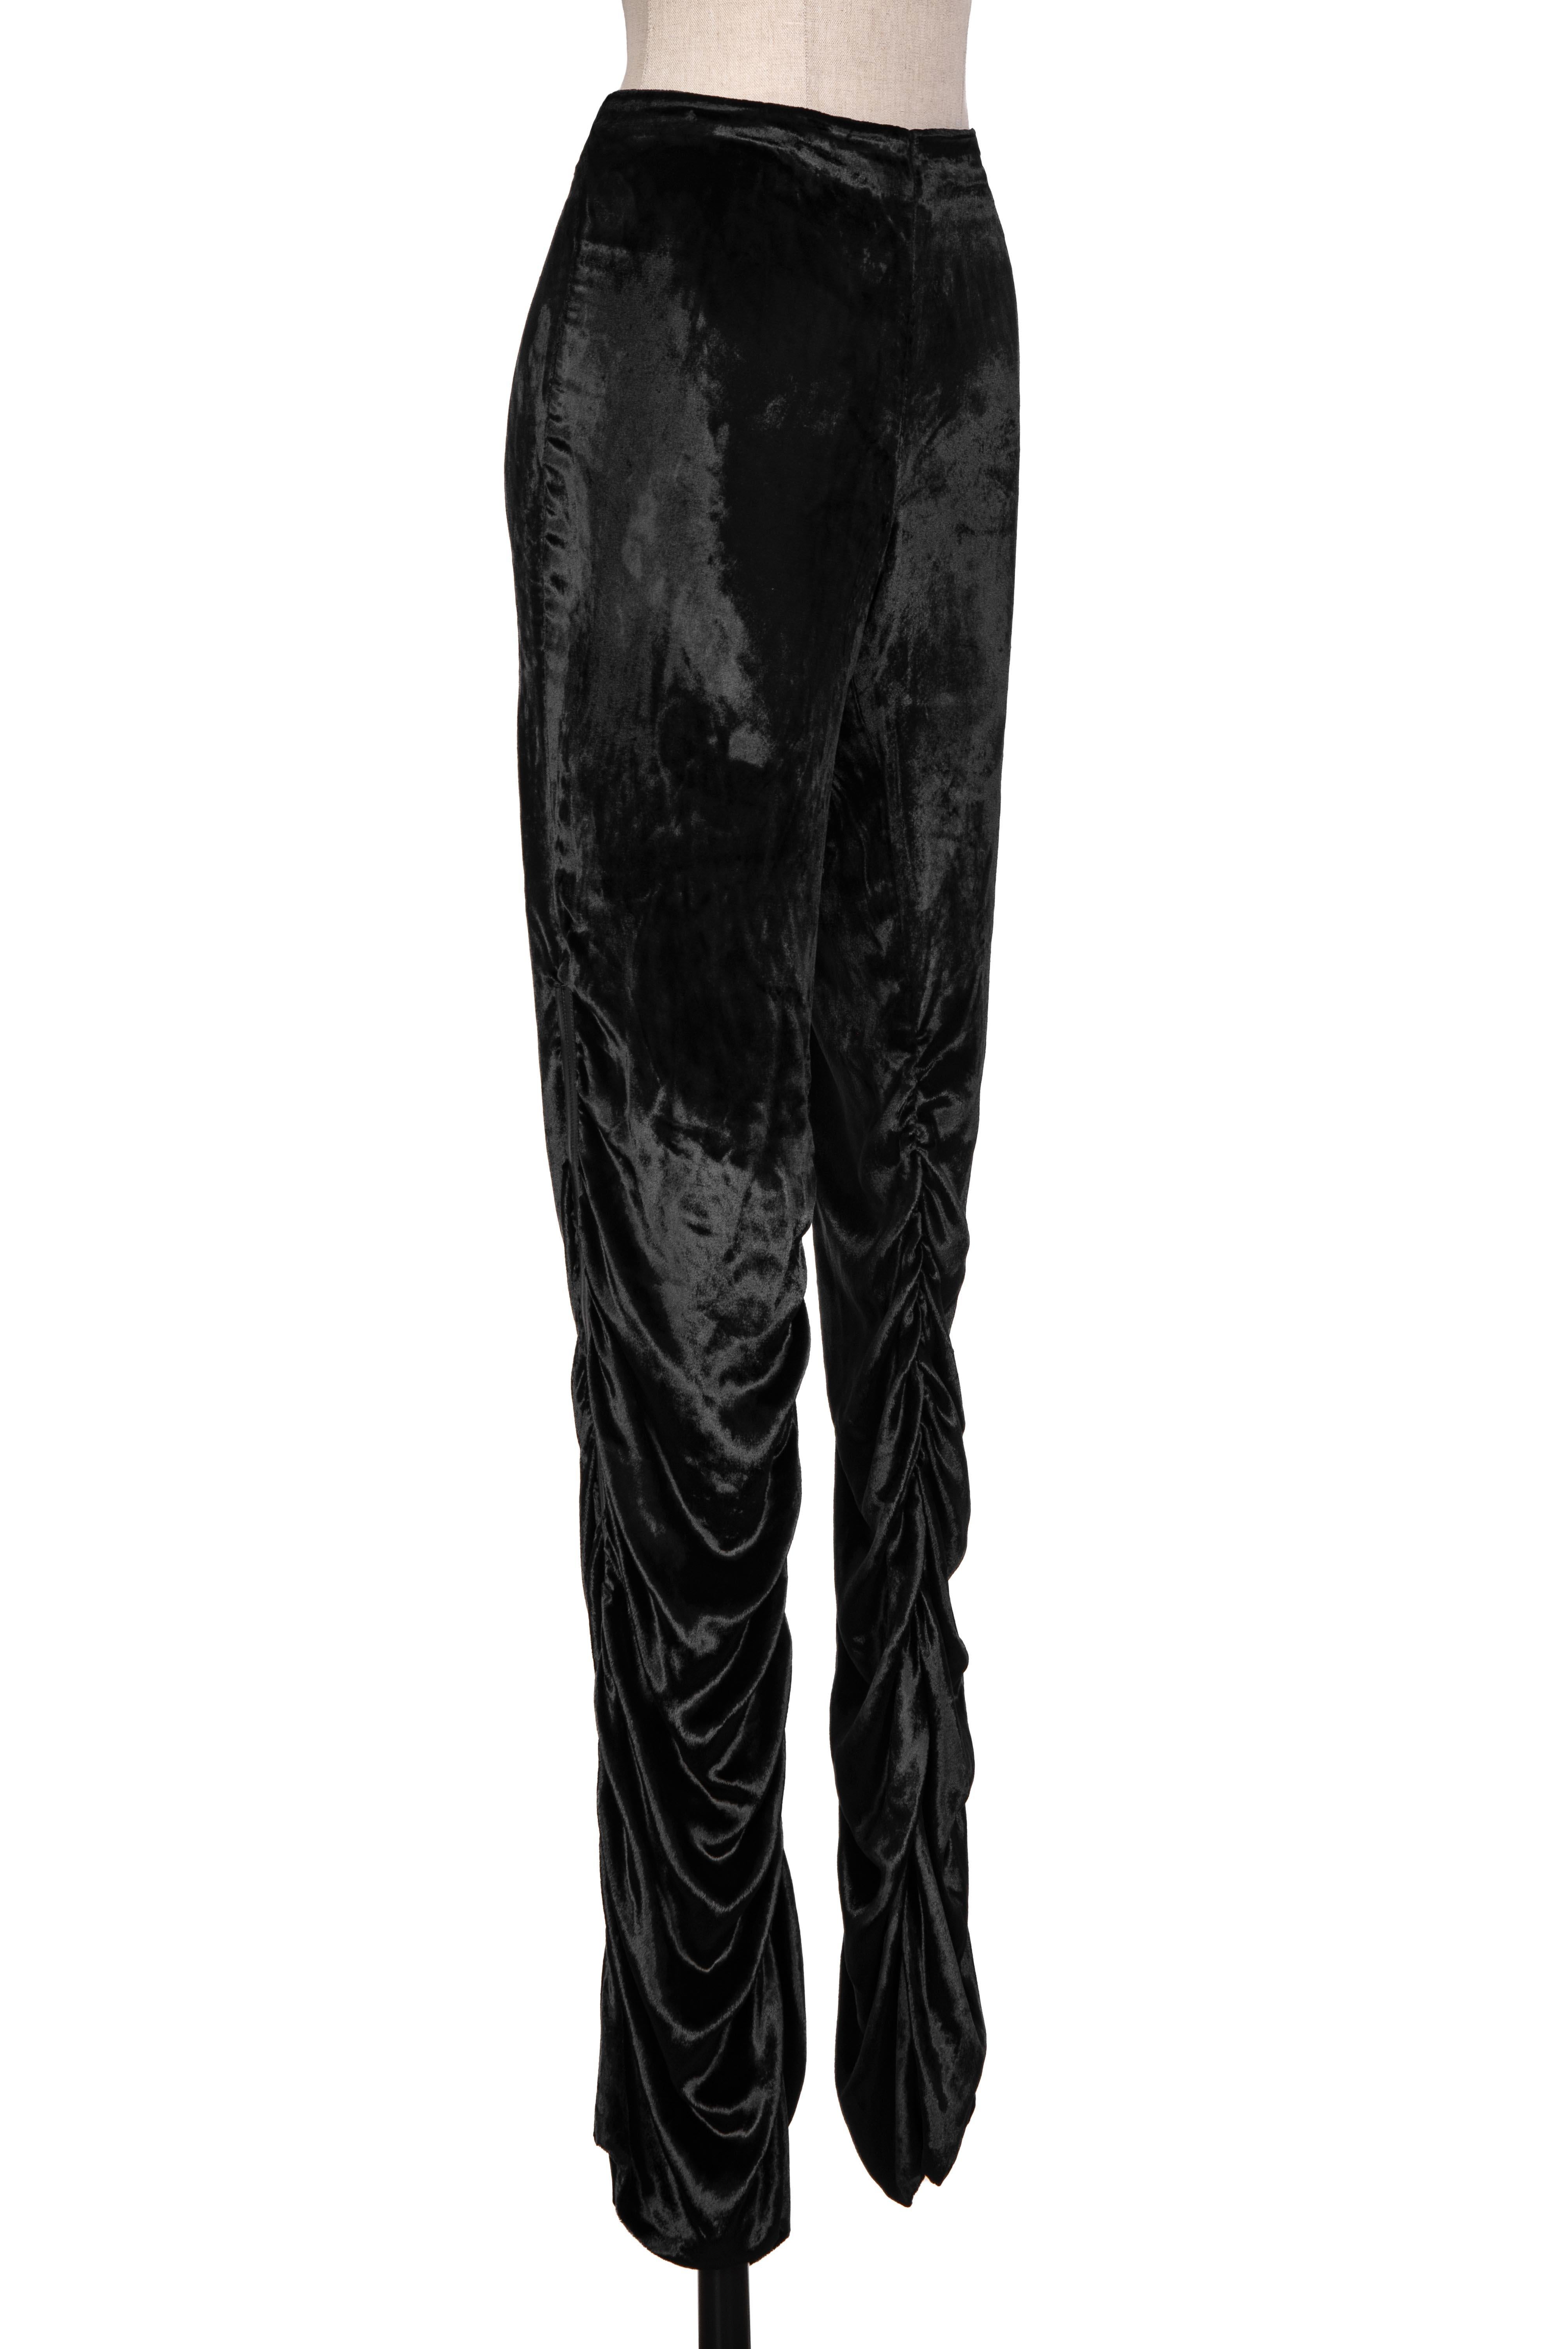 Automne 1999 Gucci Tom Ford Documented Pantalon drapé en velours noir à bandes de cuir Pour femmes en vente